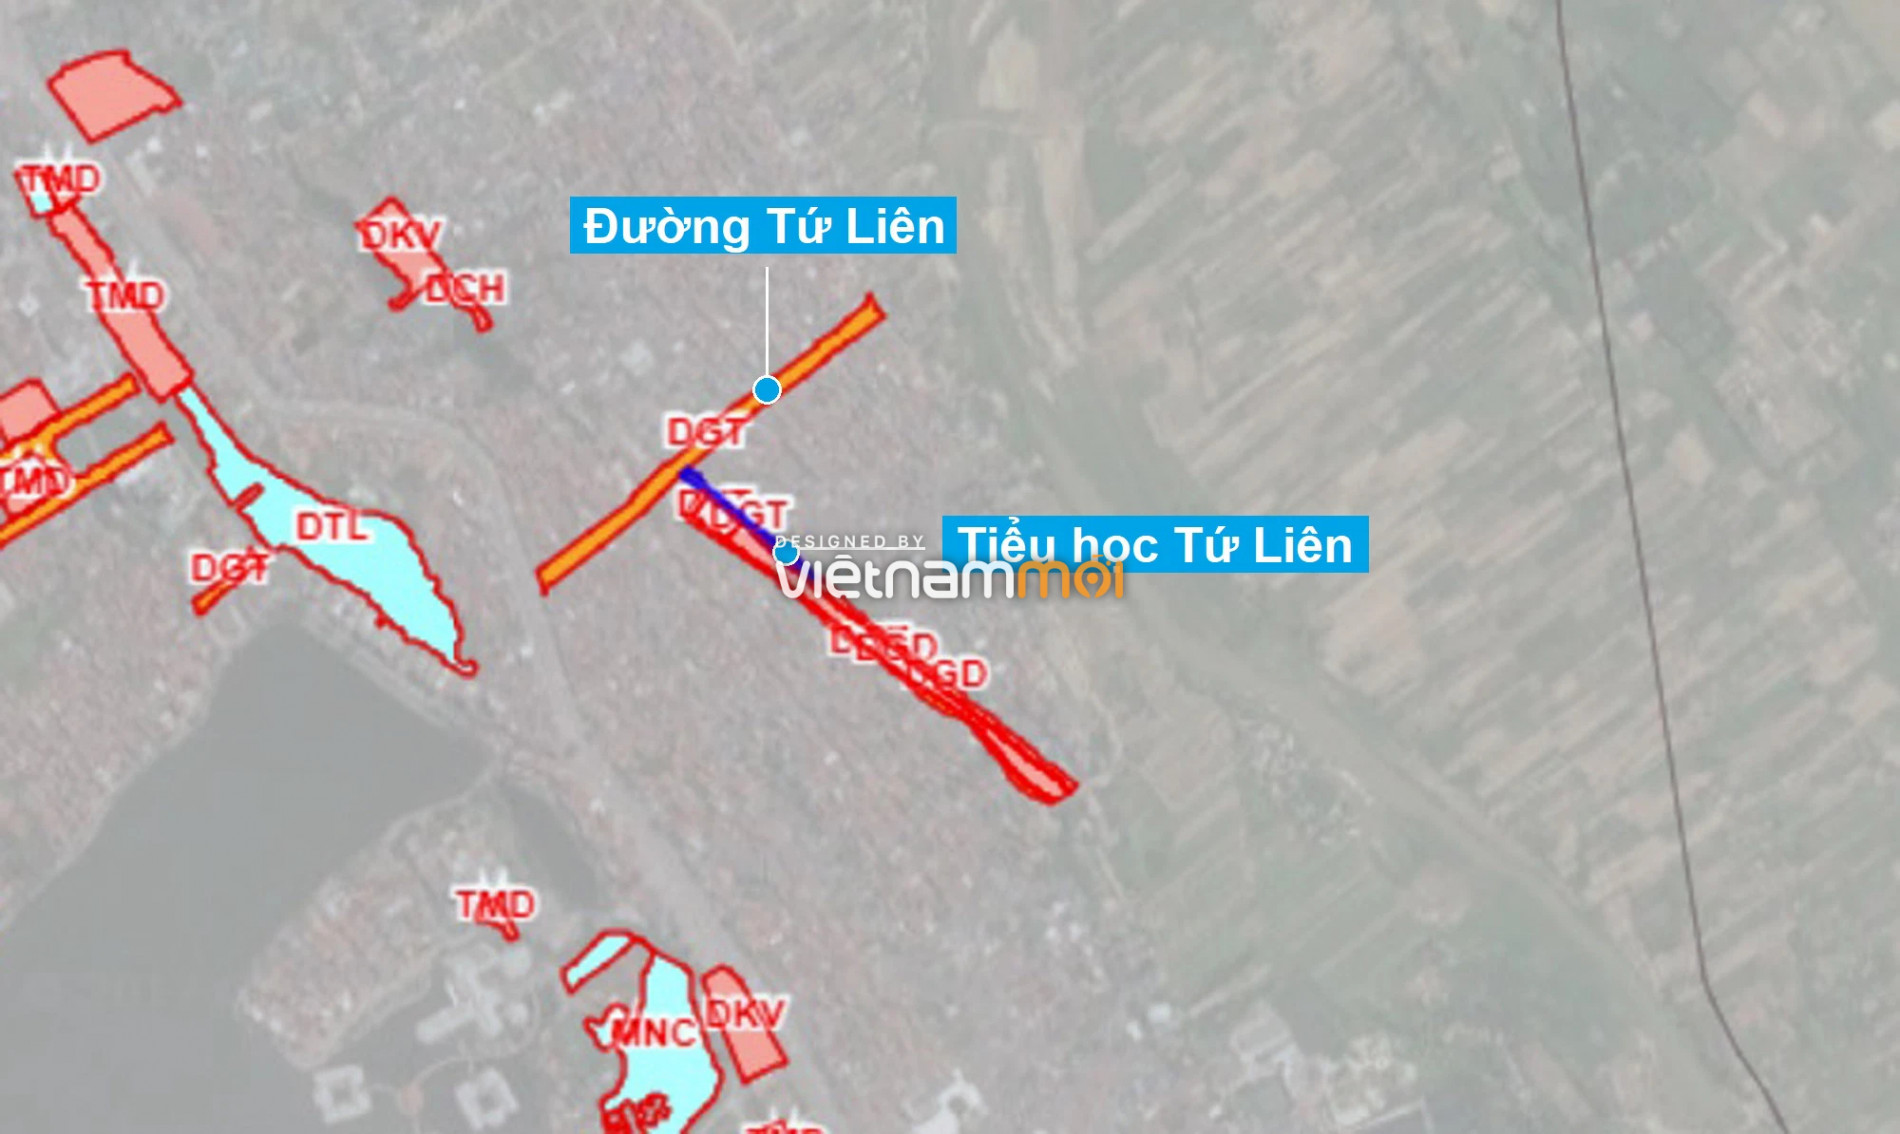 Những khu đất sắp thu hồi để mở đường ở quận Tây Hồ, Hà Nội (phần 5) - Ảnh 8.